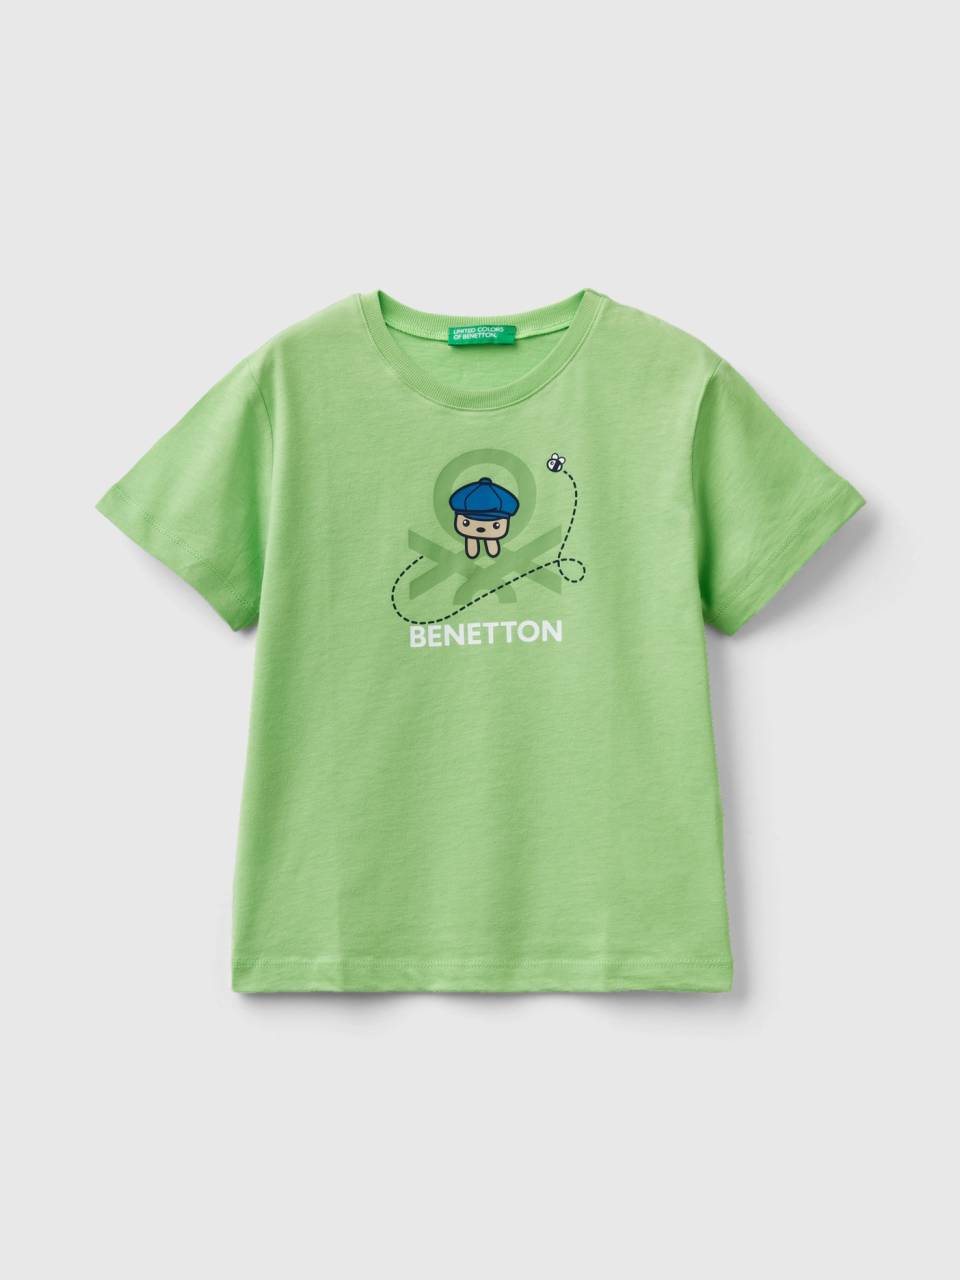 Benetton T-Shirt aus | Print Hellgrün Bio-Baumwolle 100% - mit